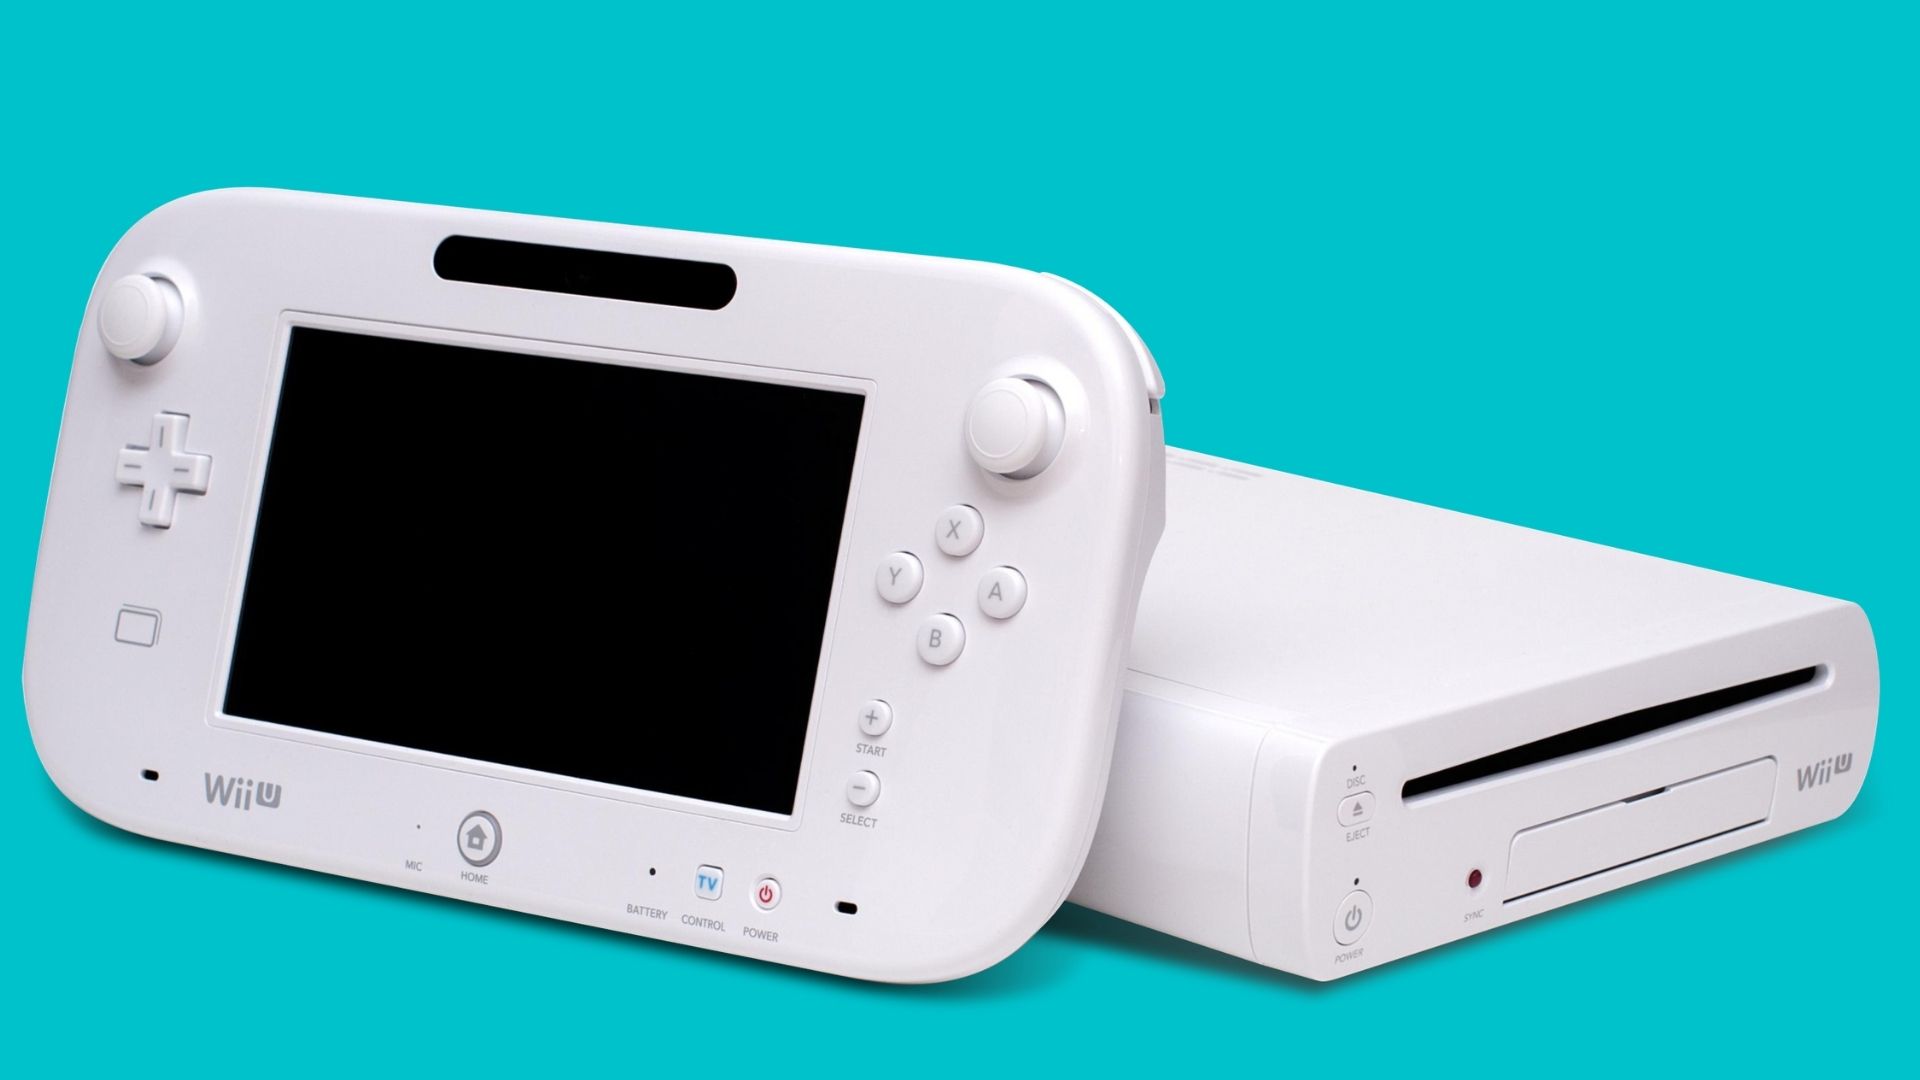 Wii U console and gamepad